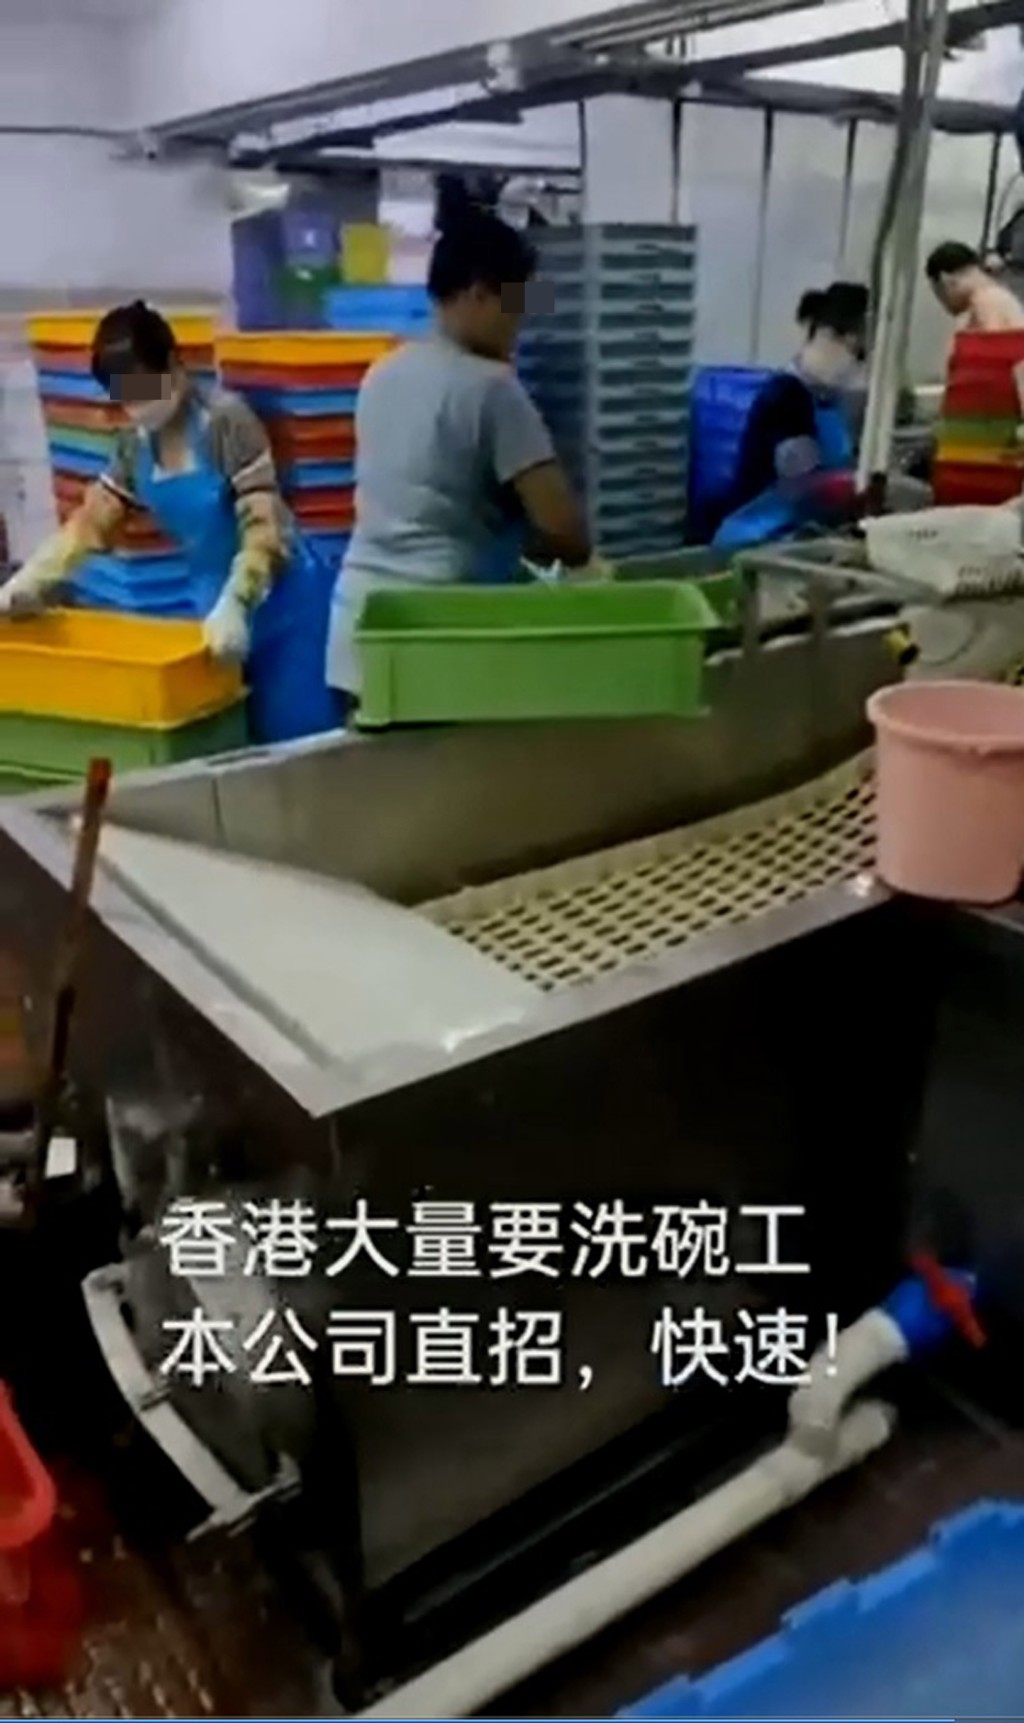 深圳中介称可安排内地人赴港当洗碗工人。